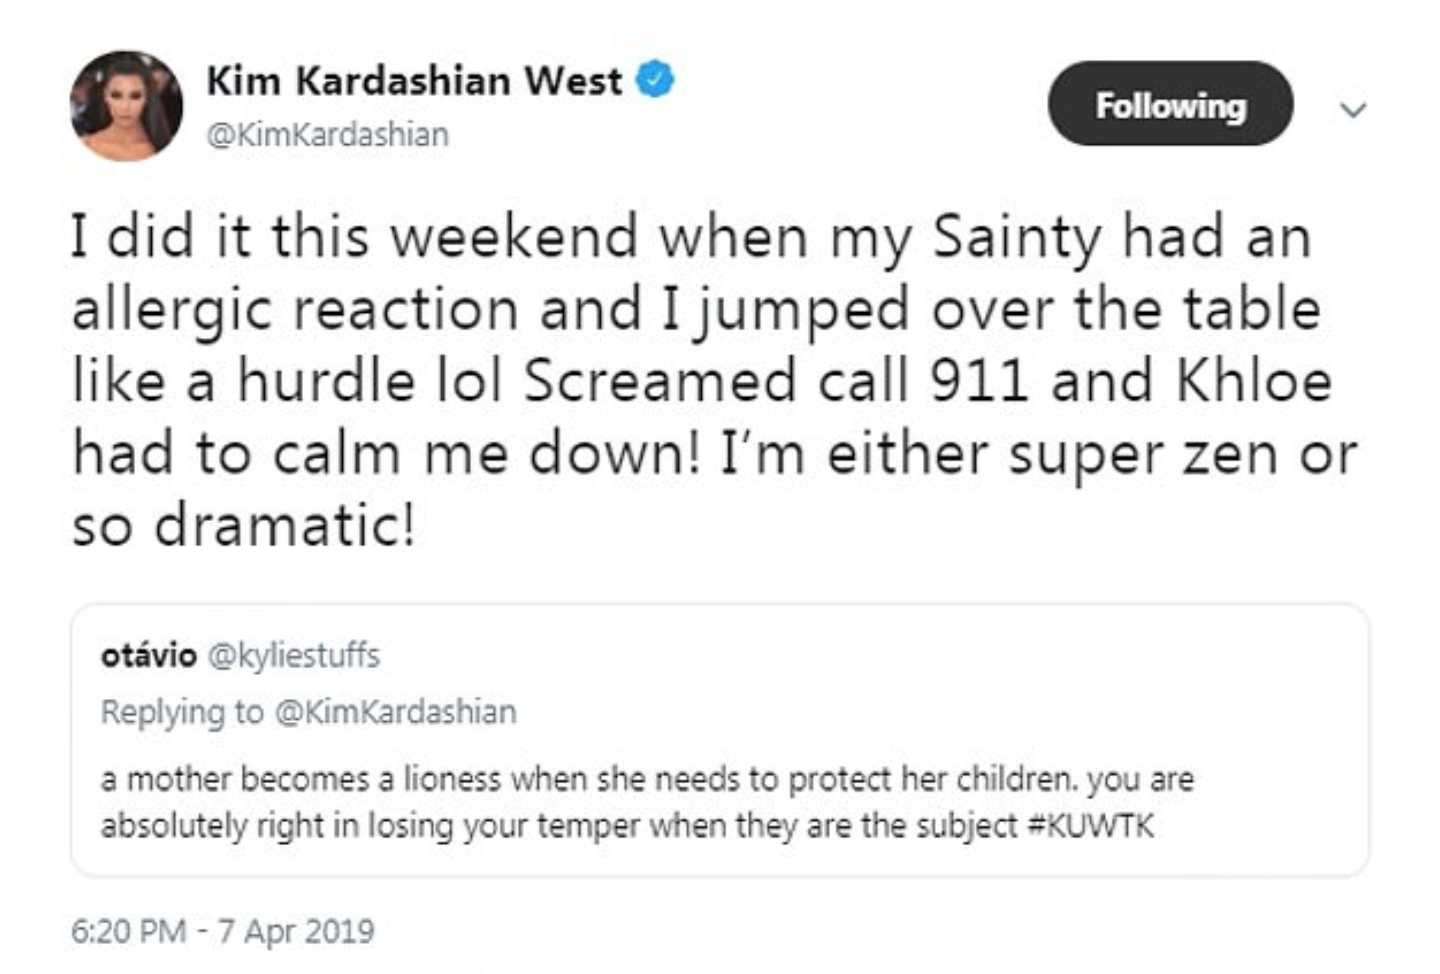 Kim Kardashian tweet